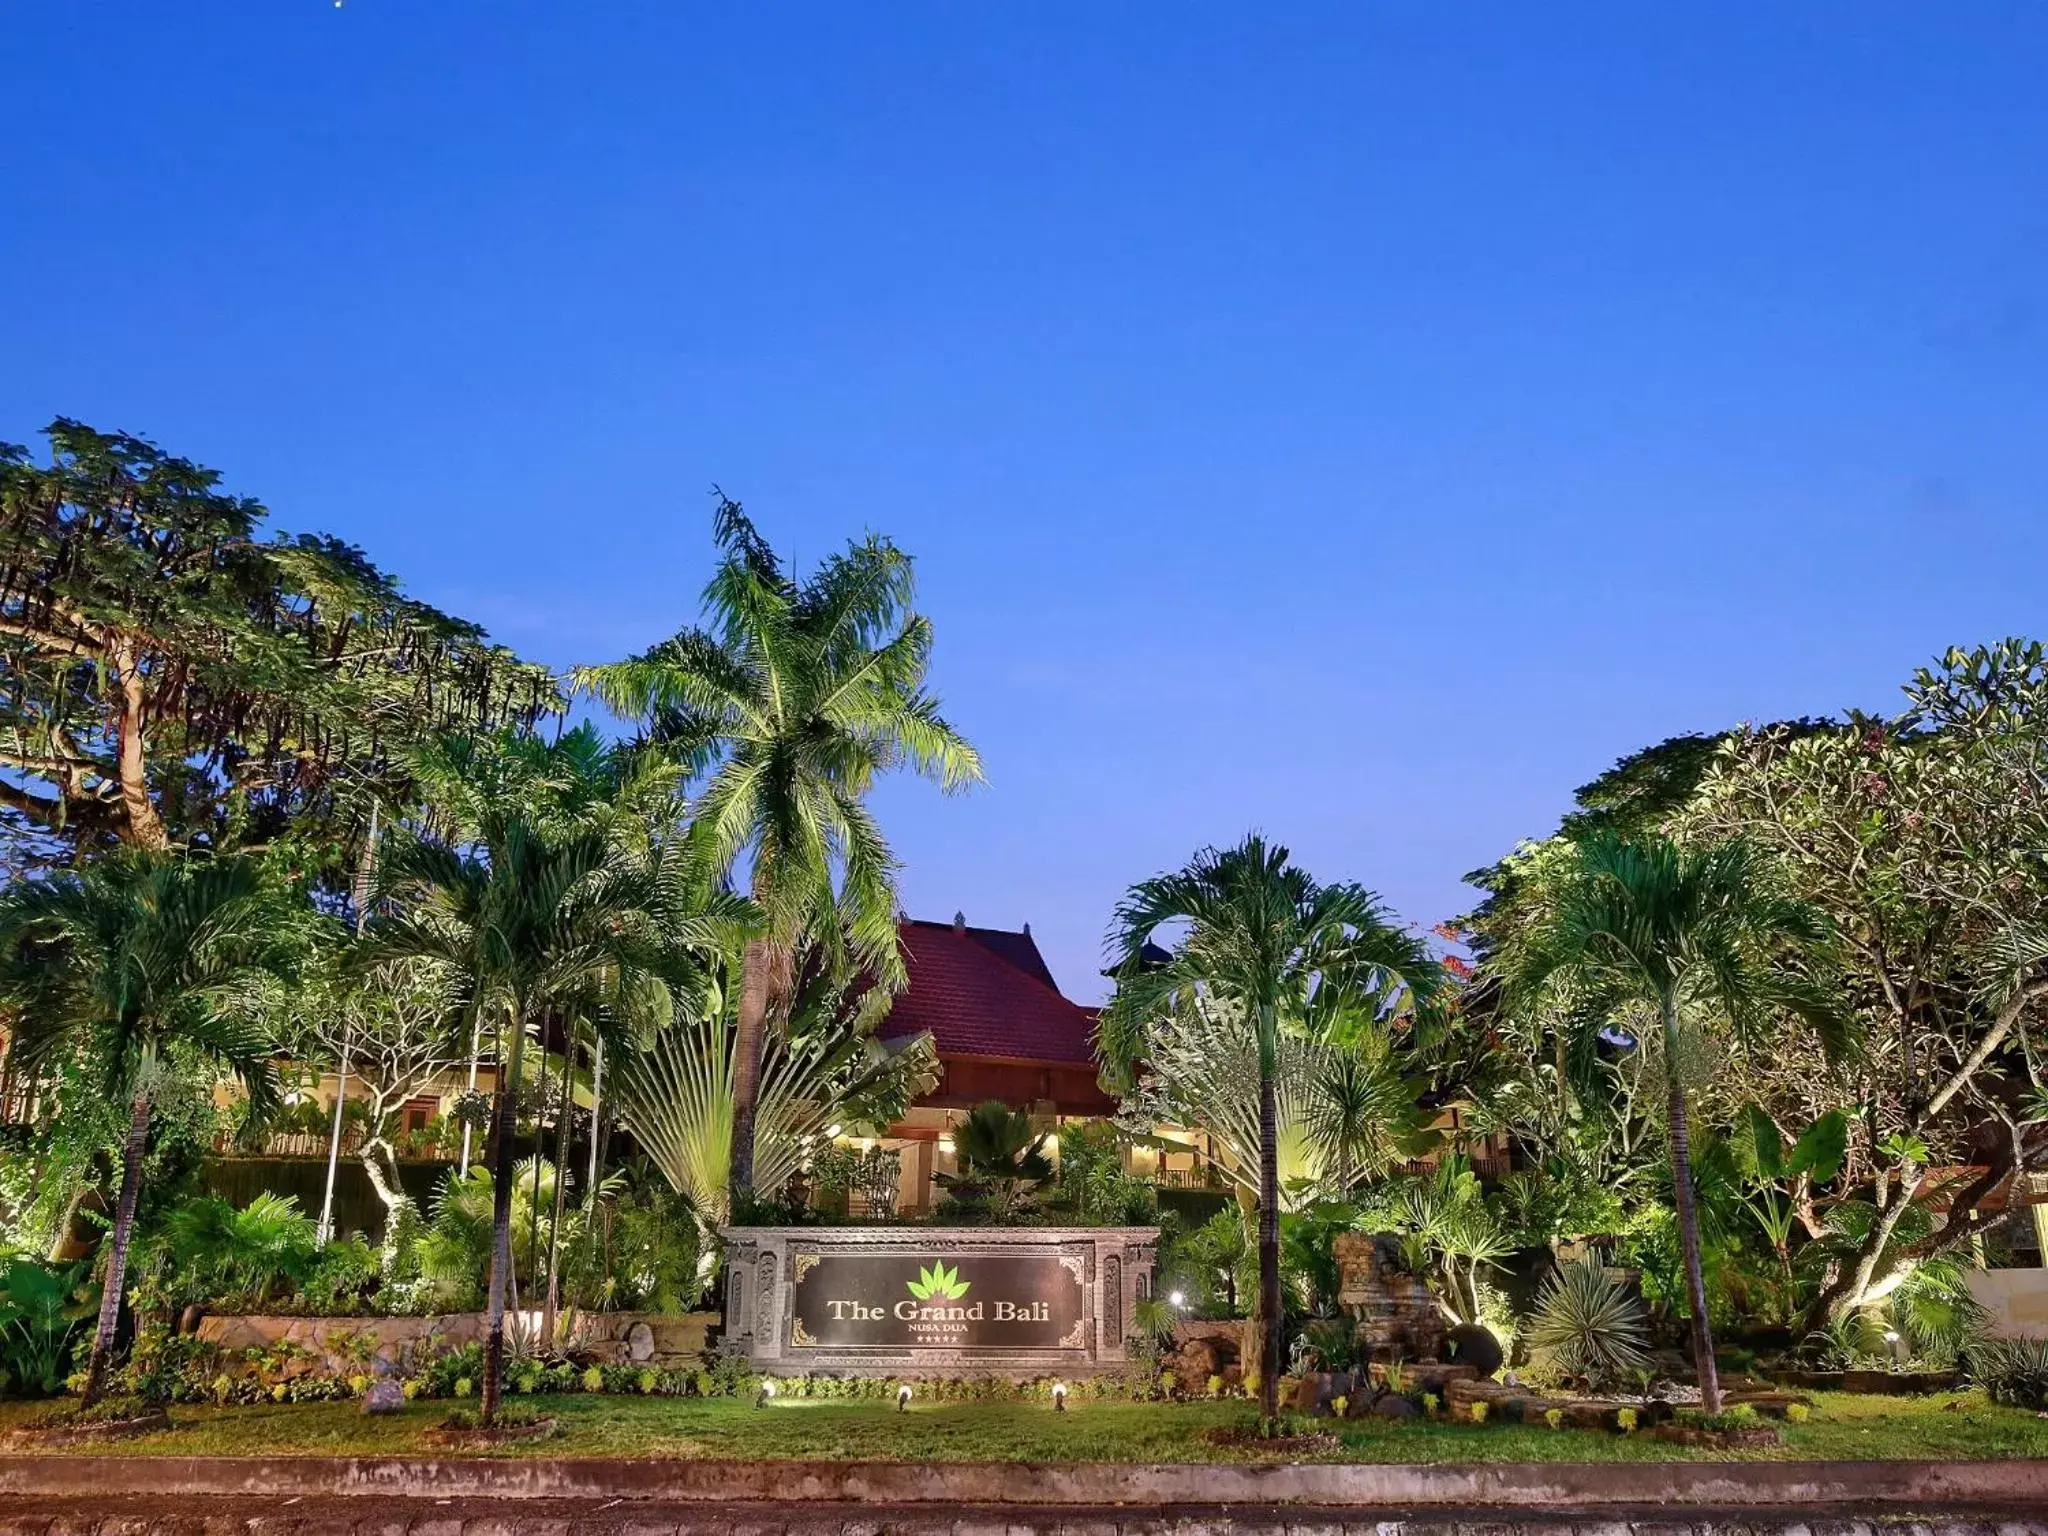 Property logo or sign, Garden in The Grand Bali Nusa Dua